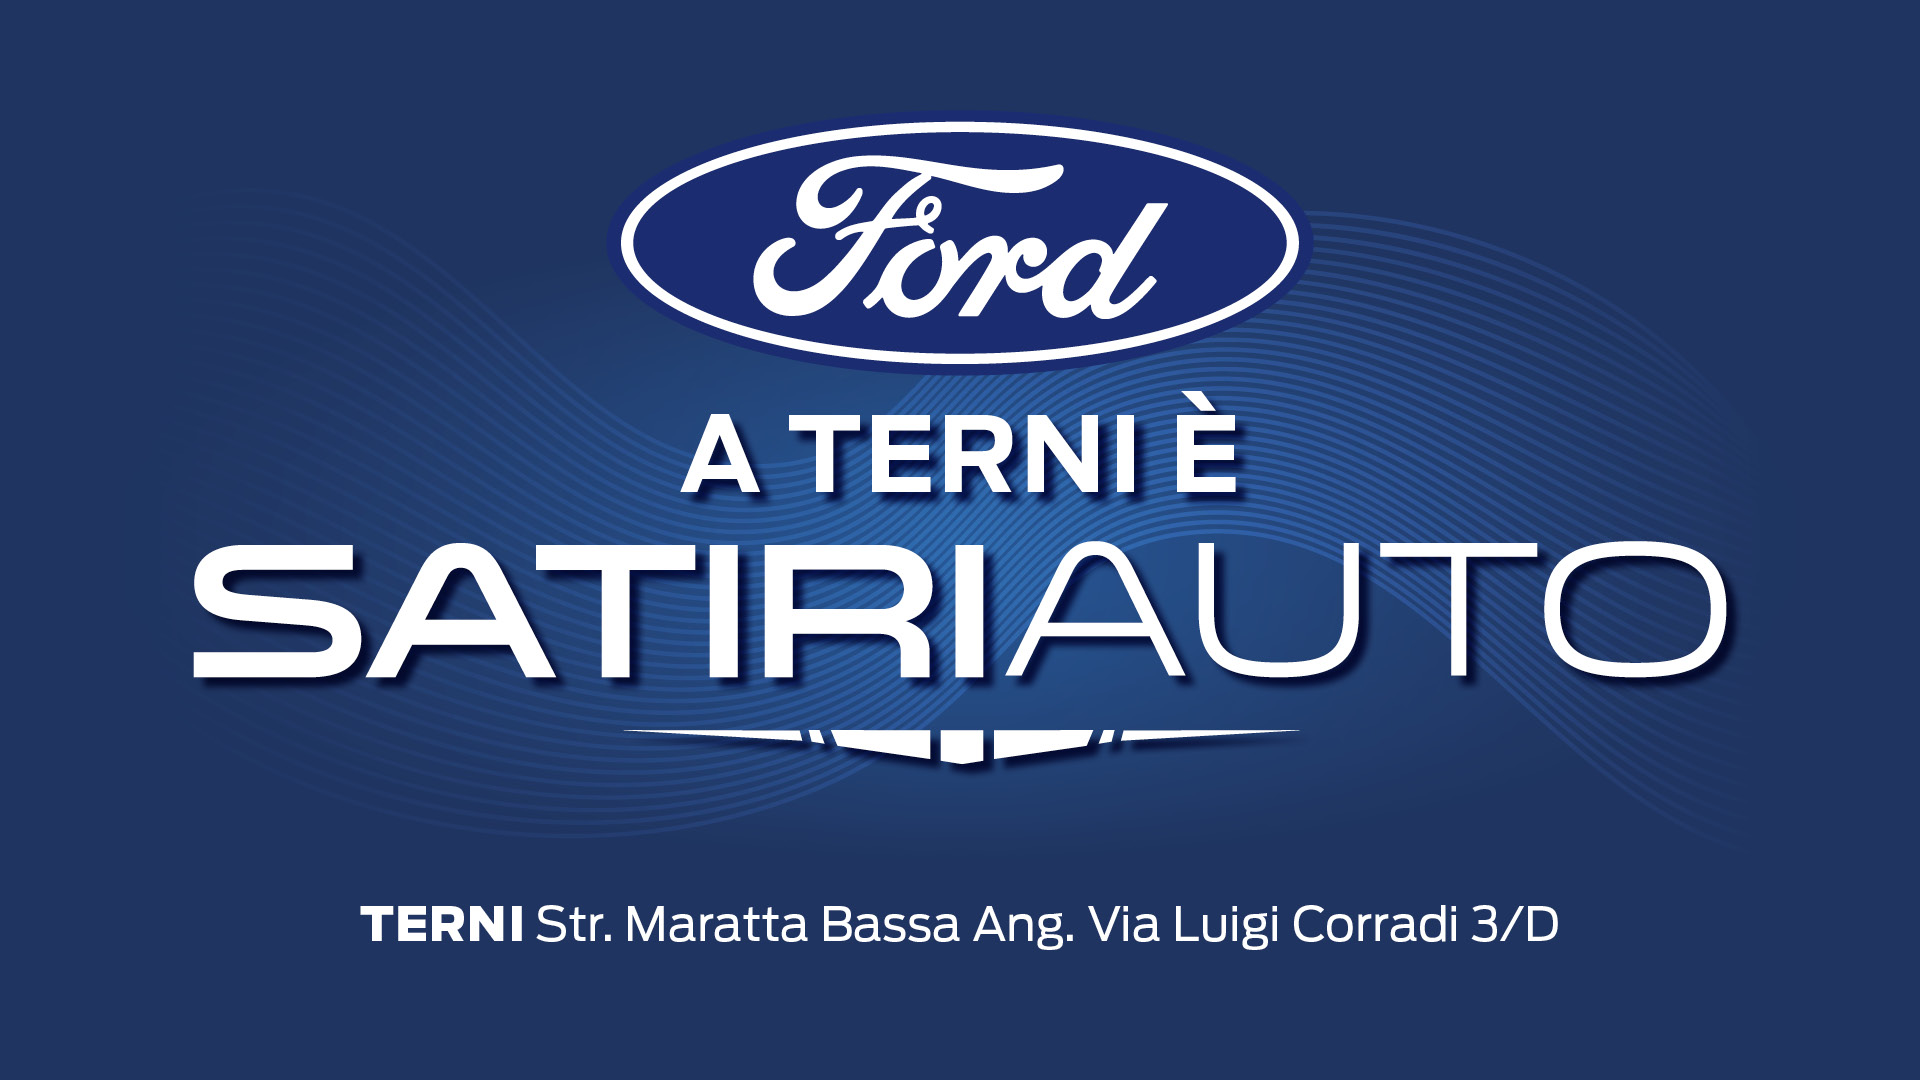 A Terni, Ford è Satiri Auto